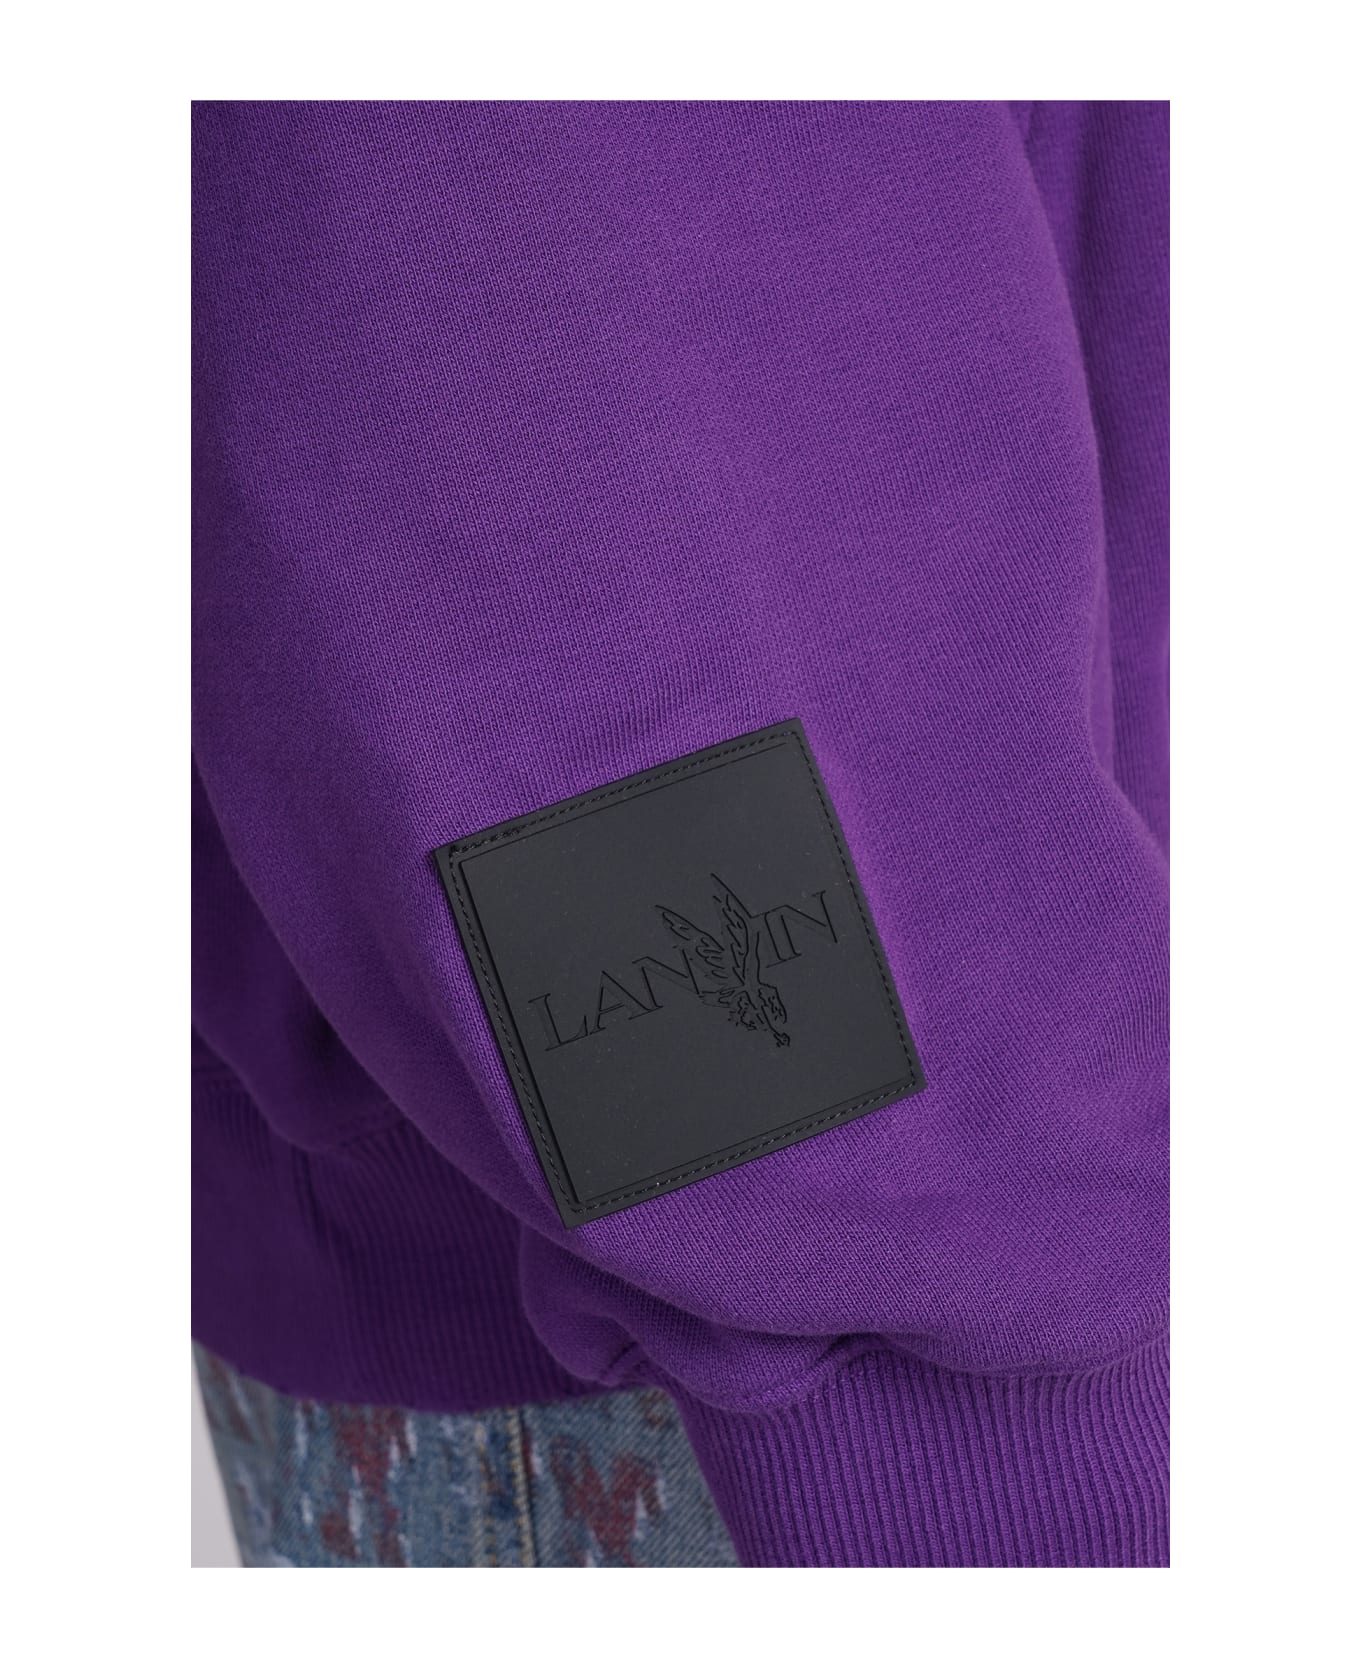 Lanvin Sweatshirt In Viola Cotton - Viola フリース